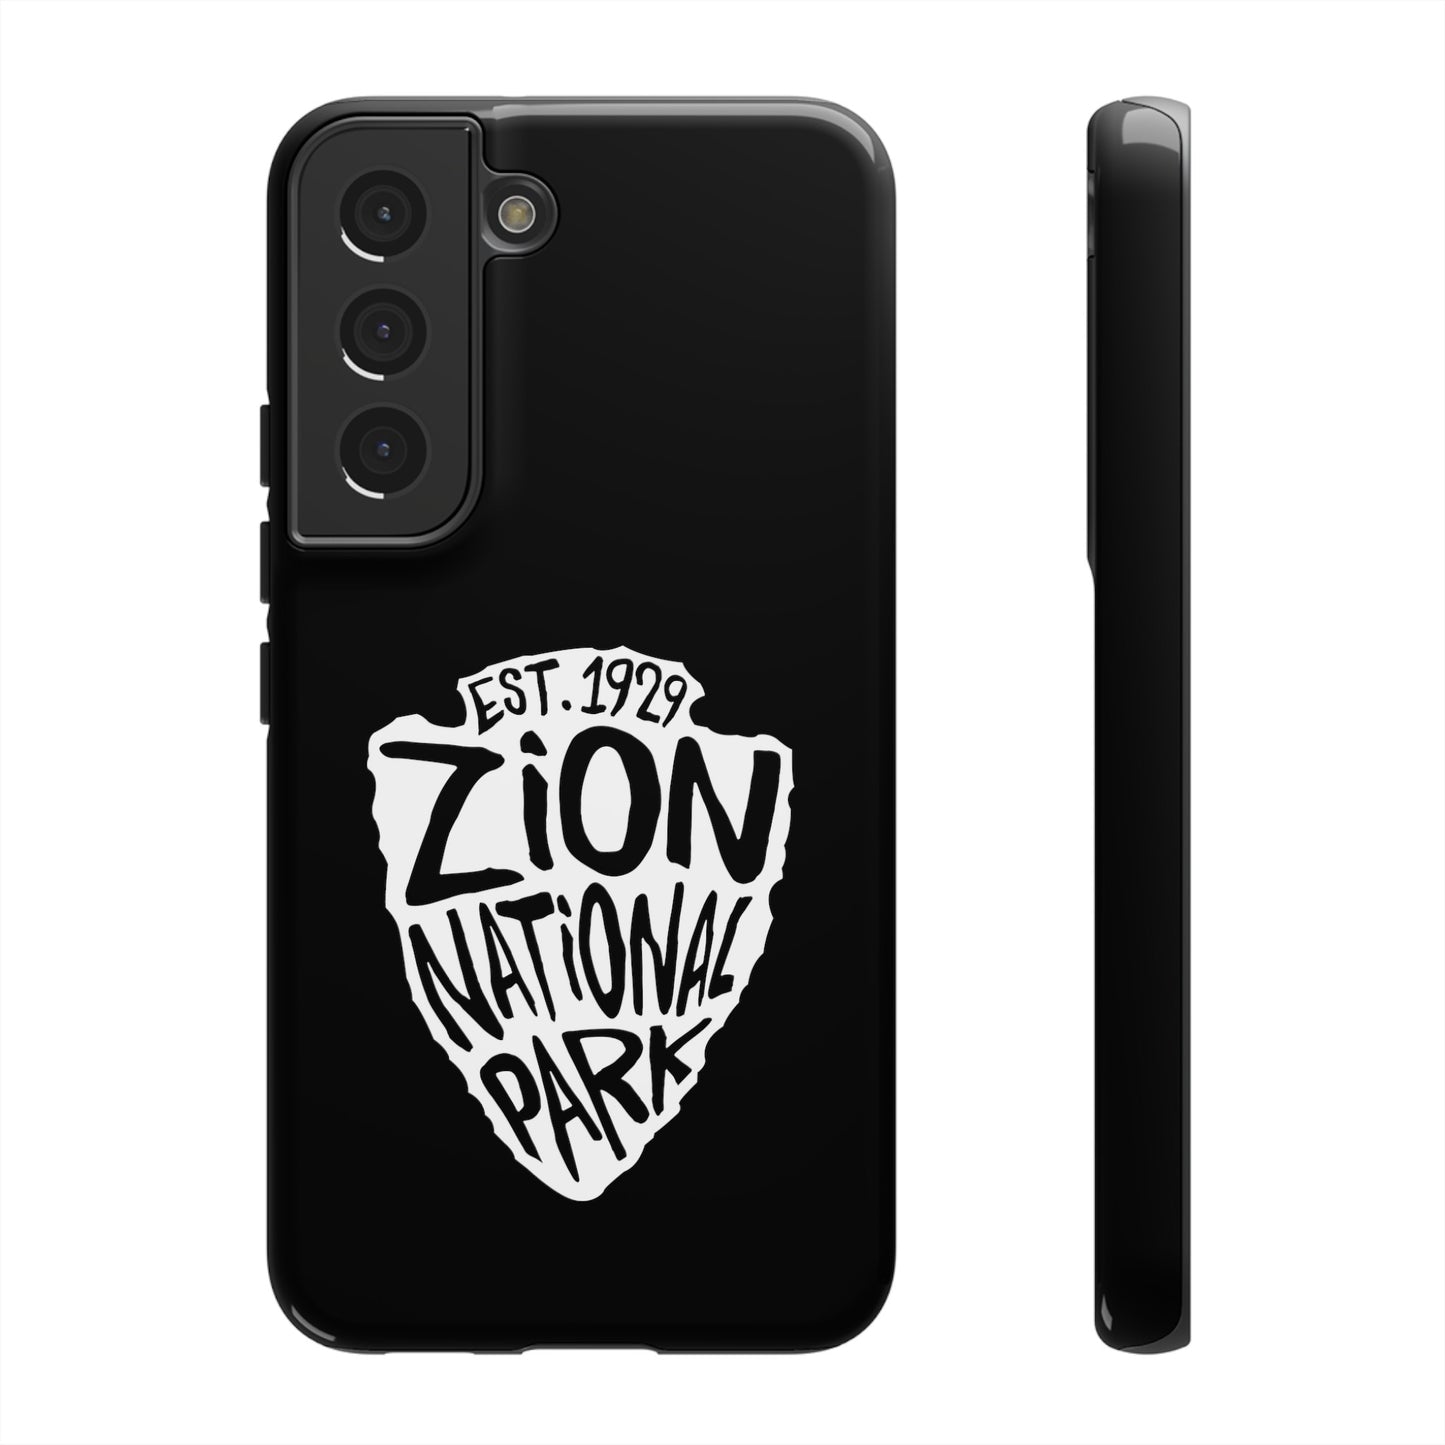 Zion National Park Phone Case - Arrowhead Design